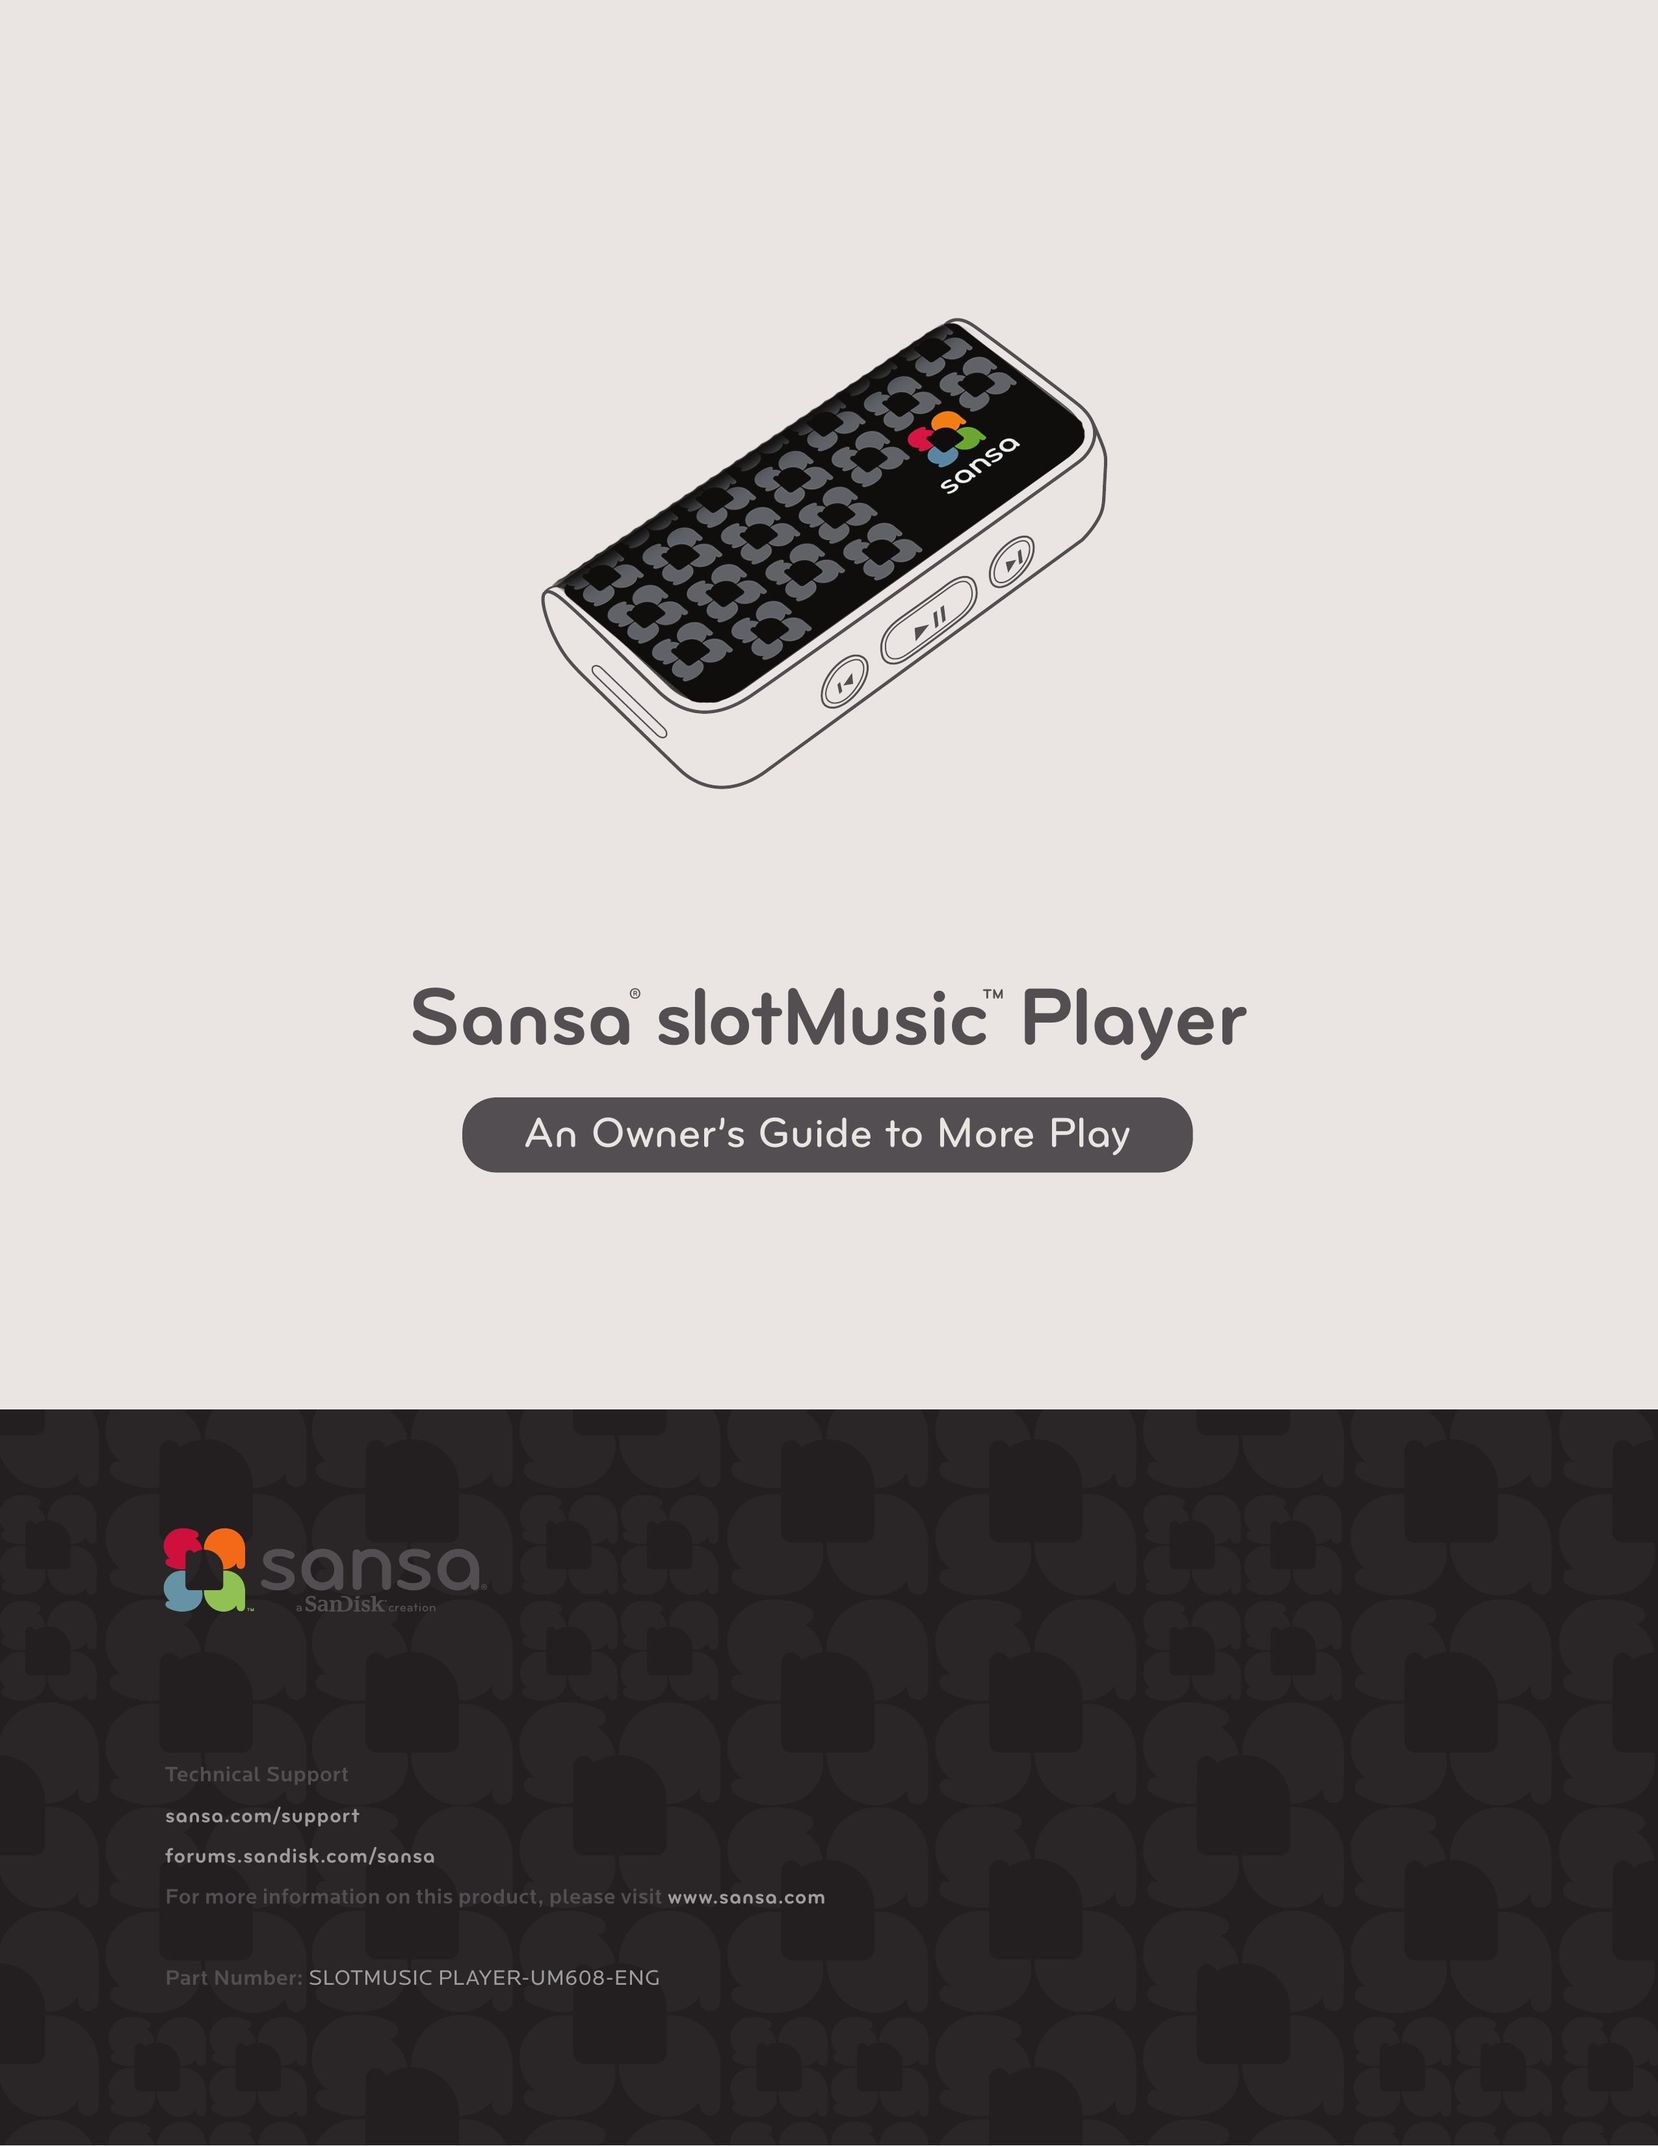 SanDisk SLOTMUSIC PLAYER-UM608-ENG MP3 Player User Manual